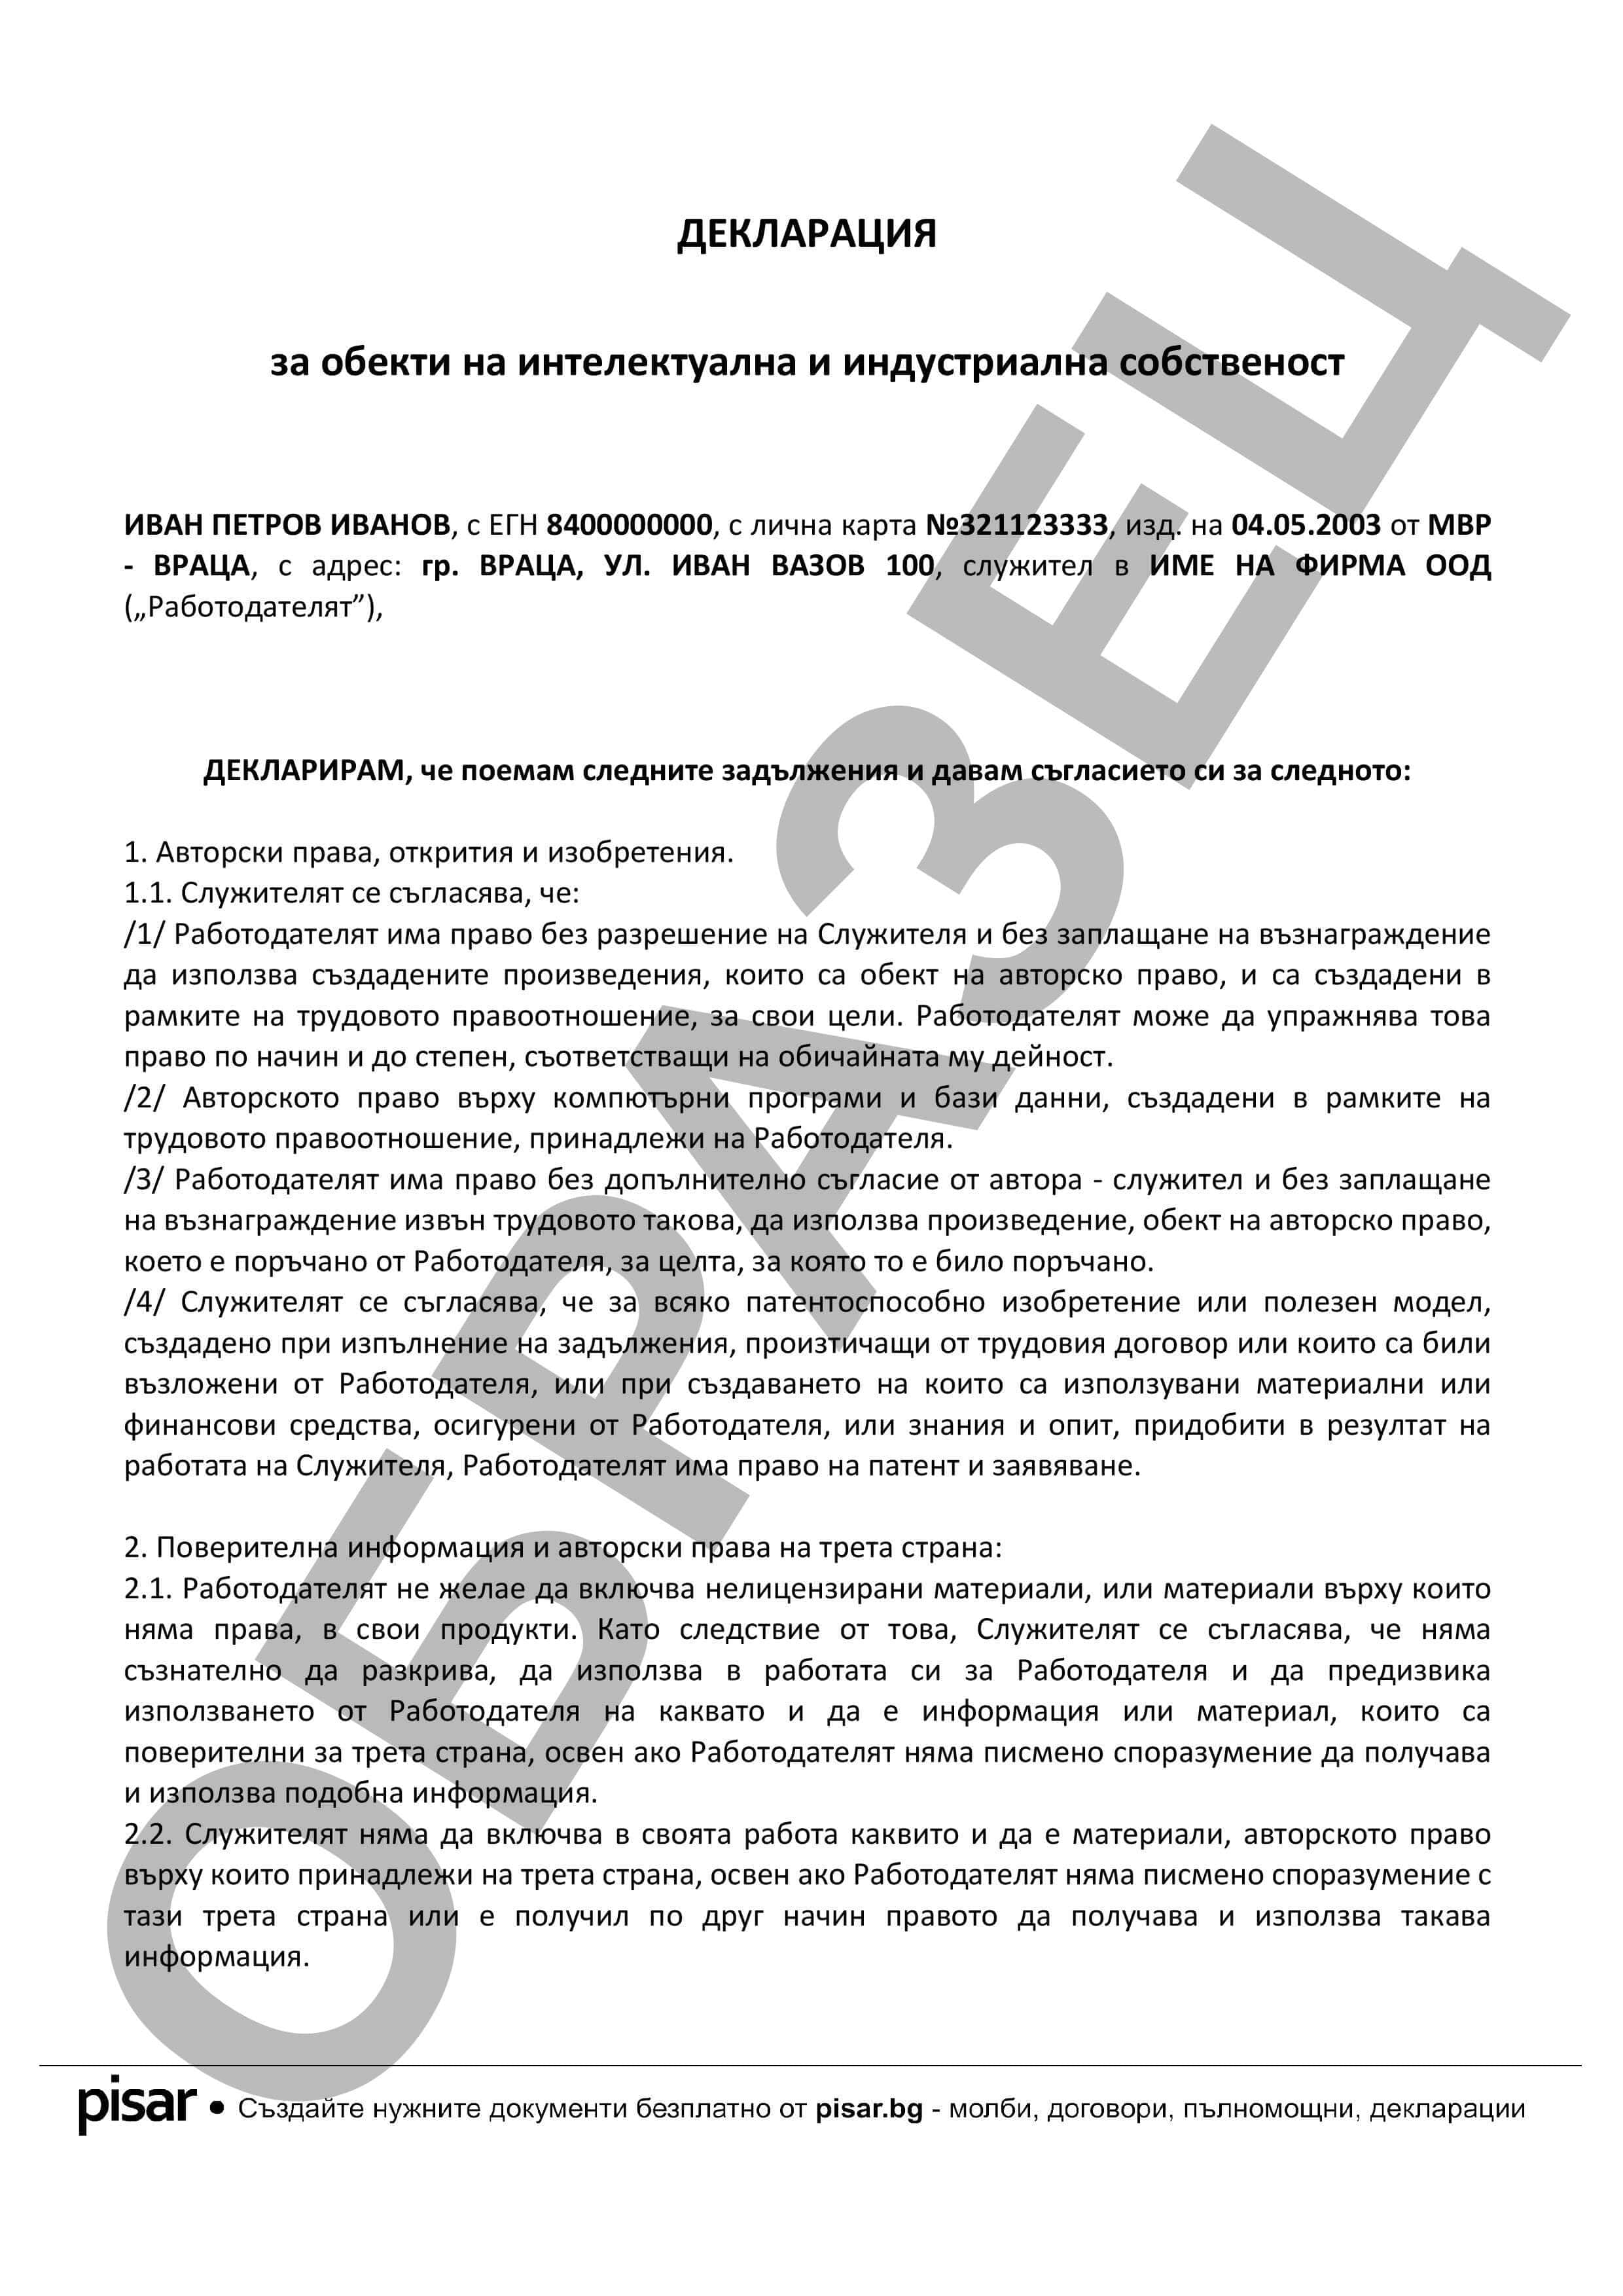 Примерен документ Декларация за обекти на интелектуална и индустриална собственост